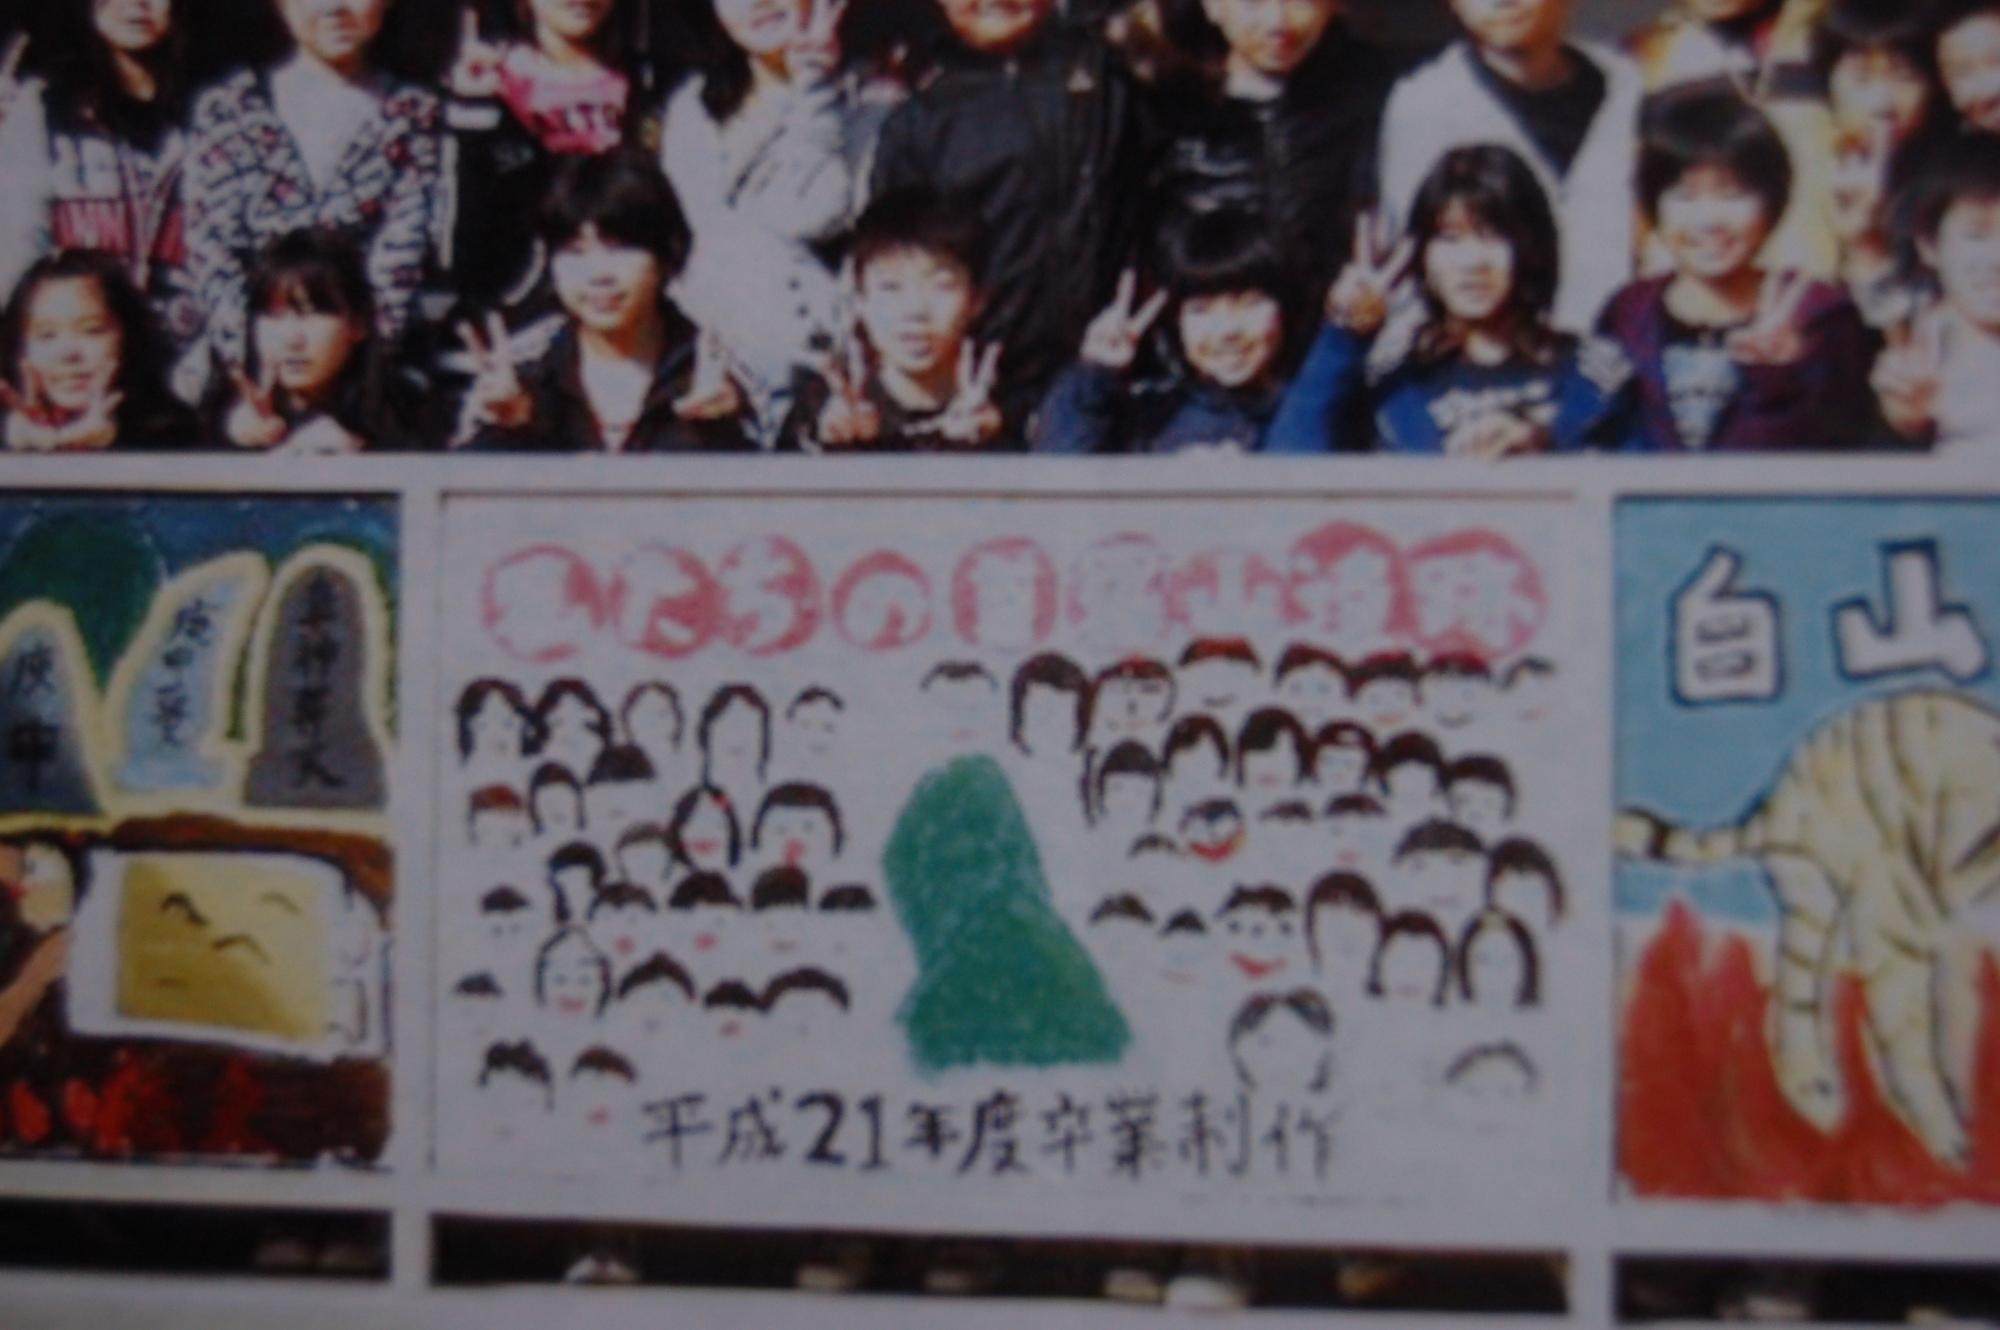 私たちの首羅山遺跡、平成21年度卒業制作と書かれた絵の奥に子供たちが並んでピースをしている写真